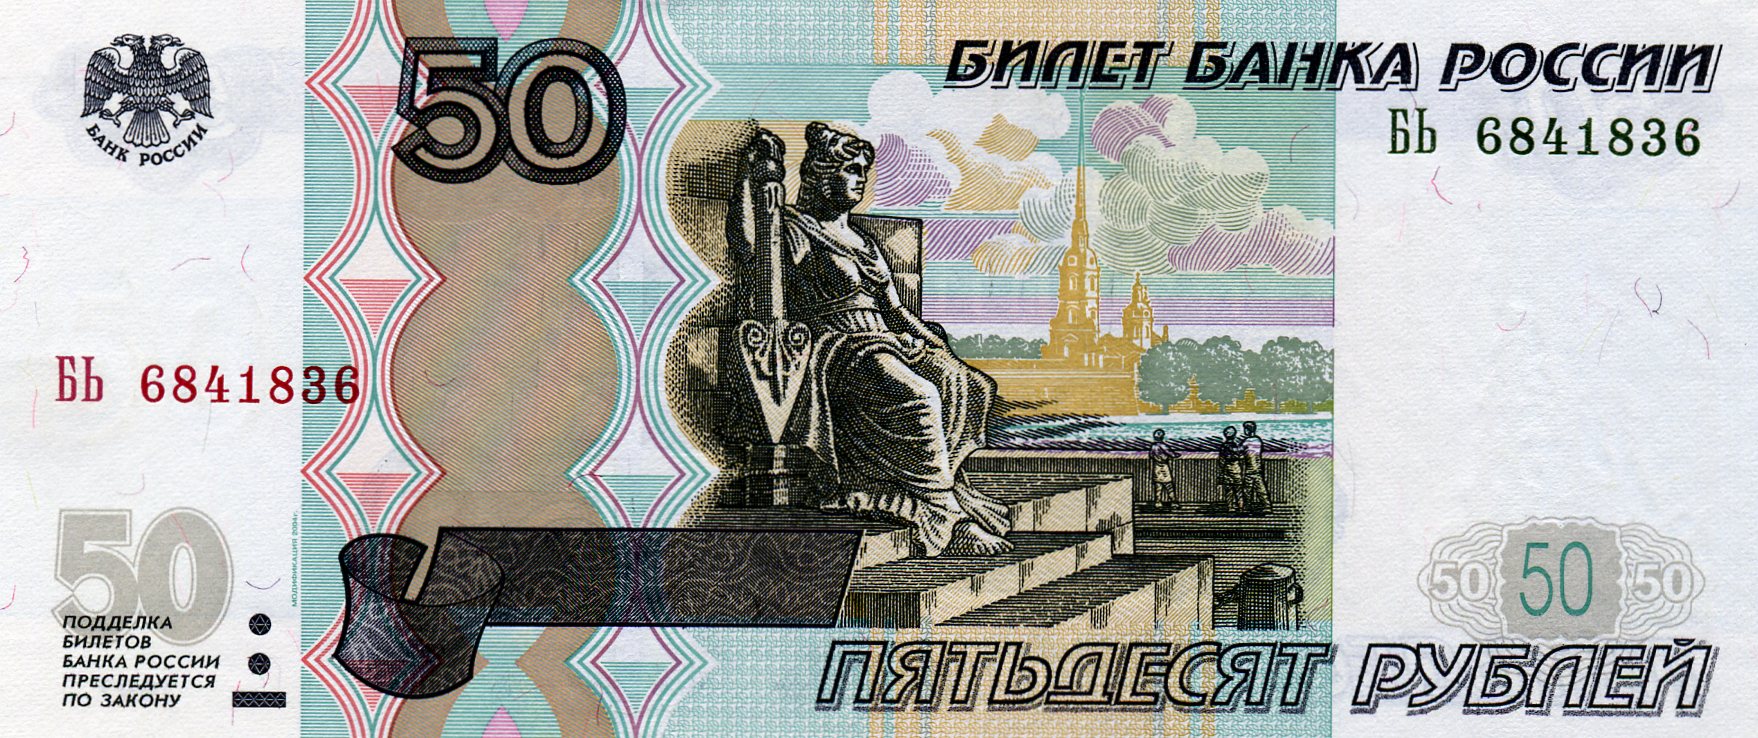 50 рублей 1997 года. Аверс. Реферат Рефератович.